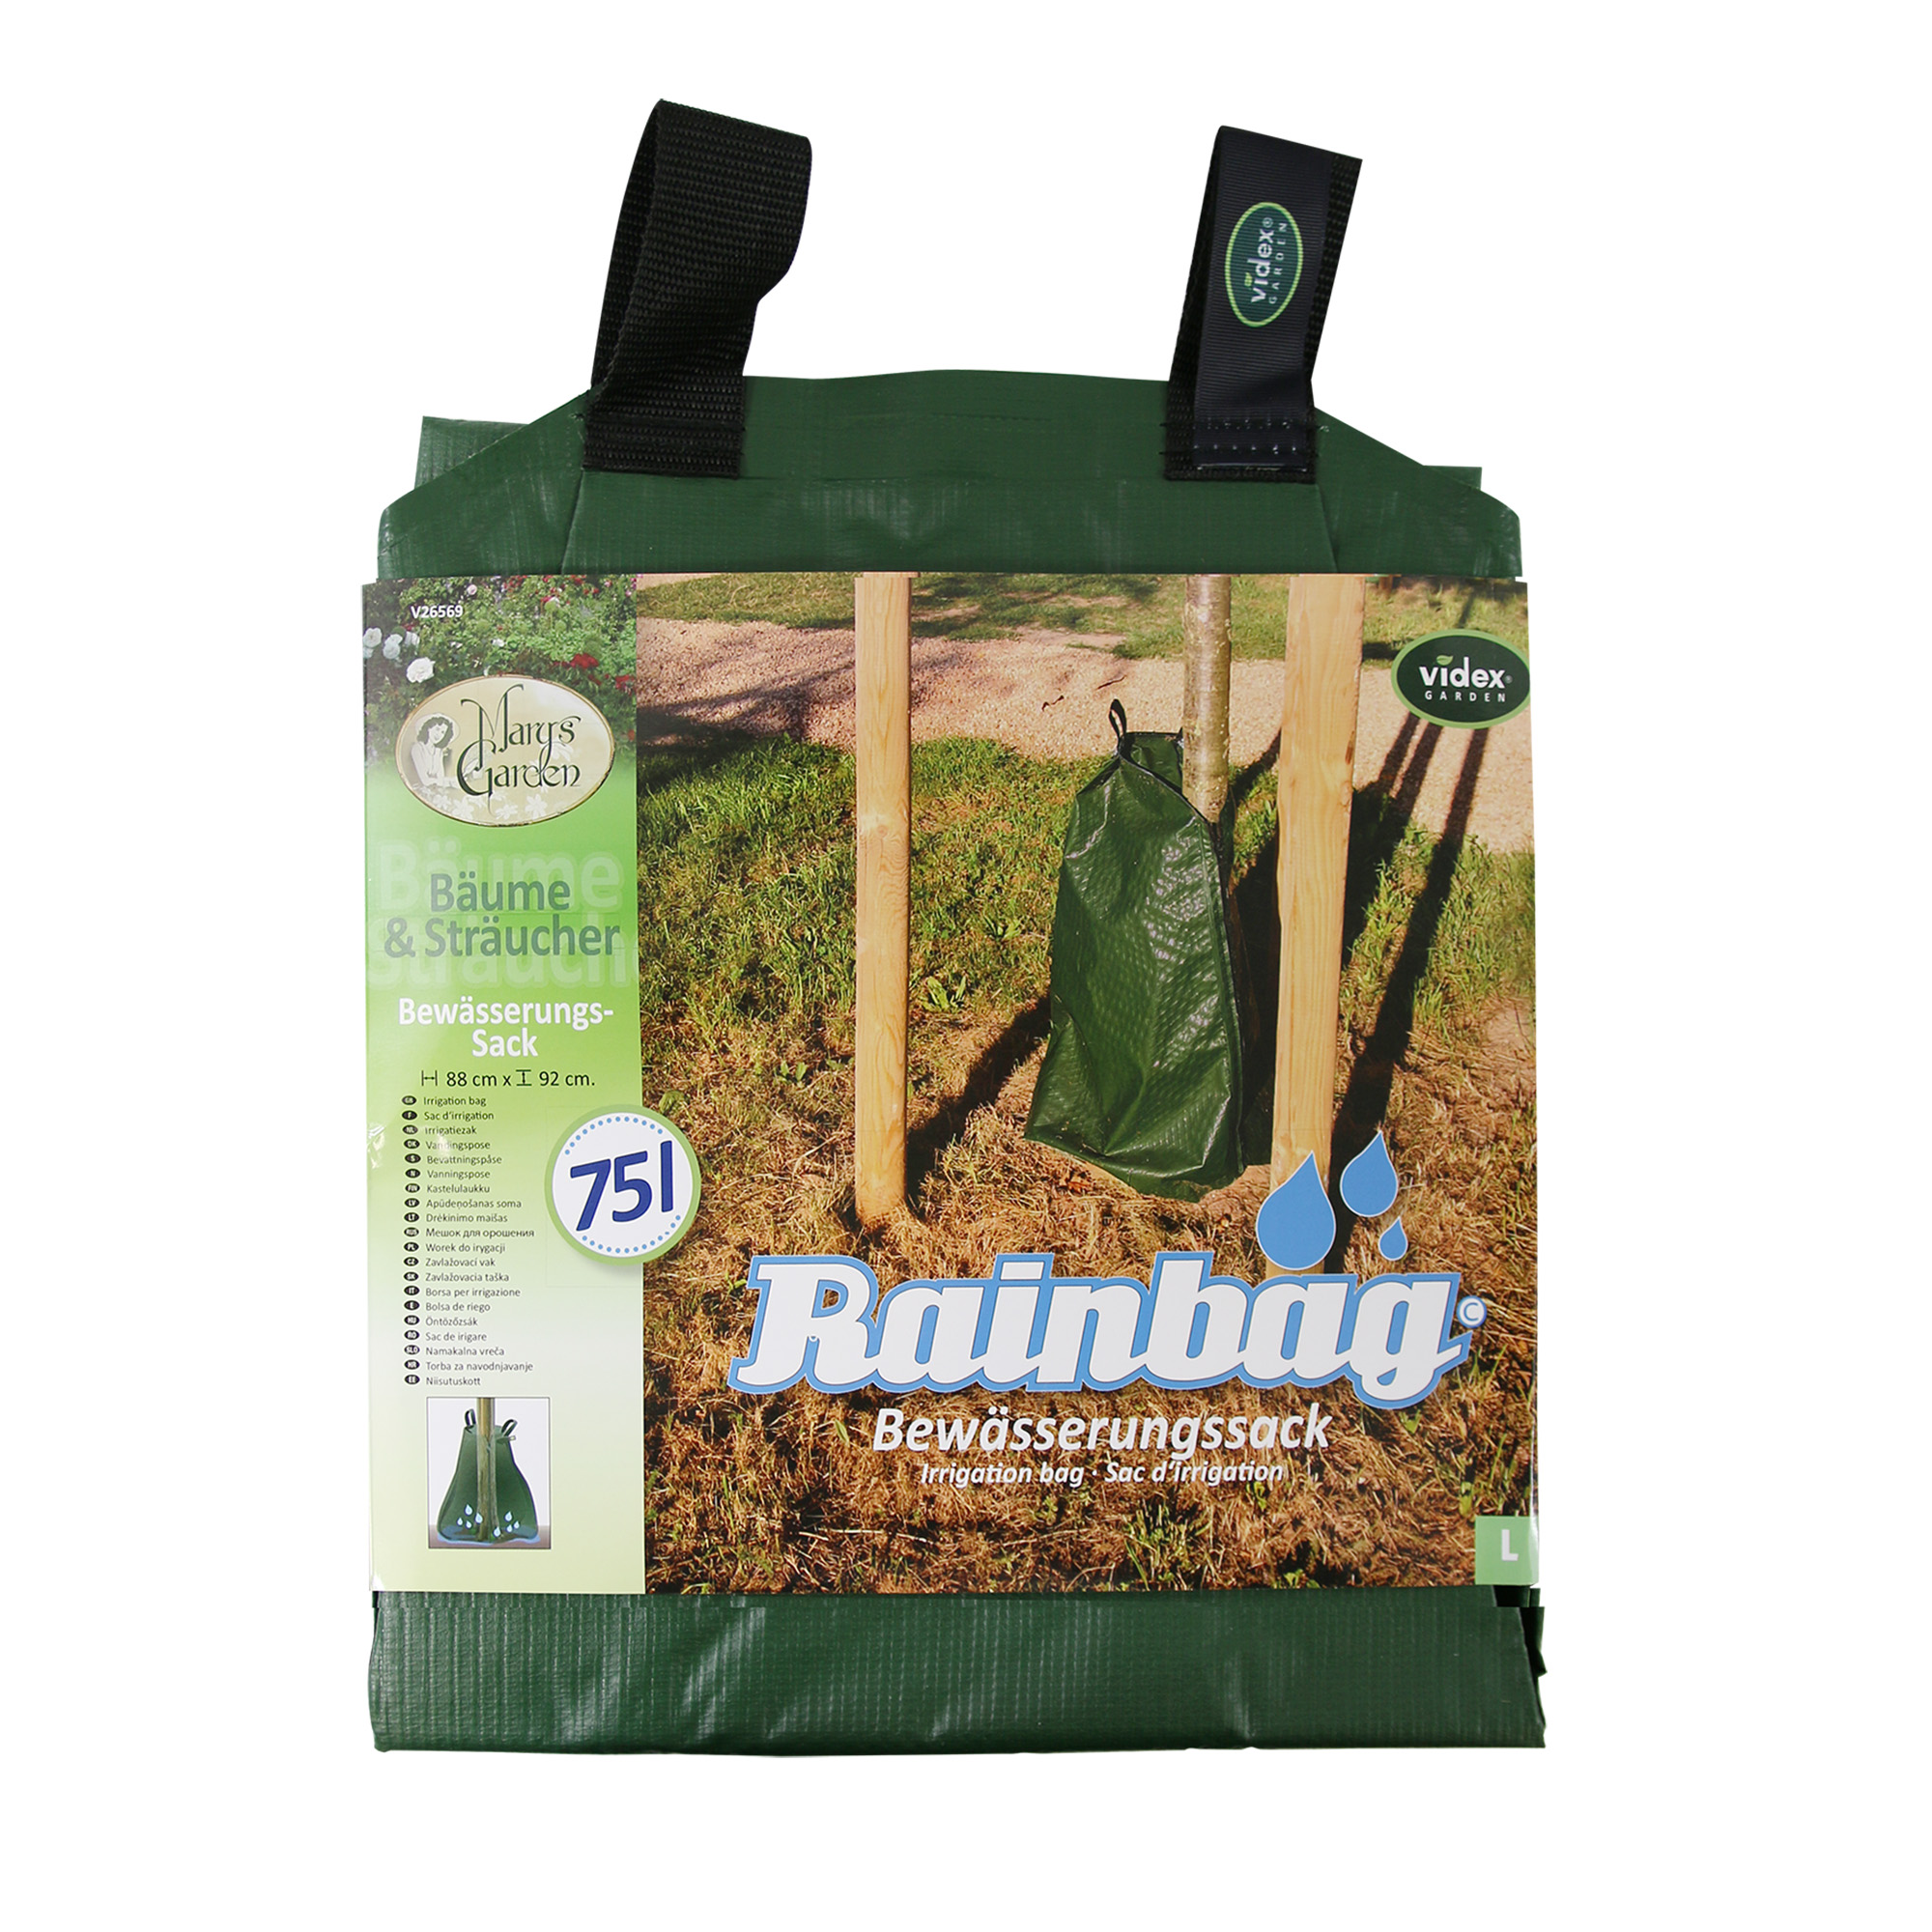 Bewässerungs-Sack 'Rainbag' Kunststoff 75 l + product picture